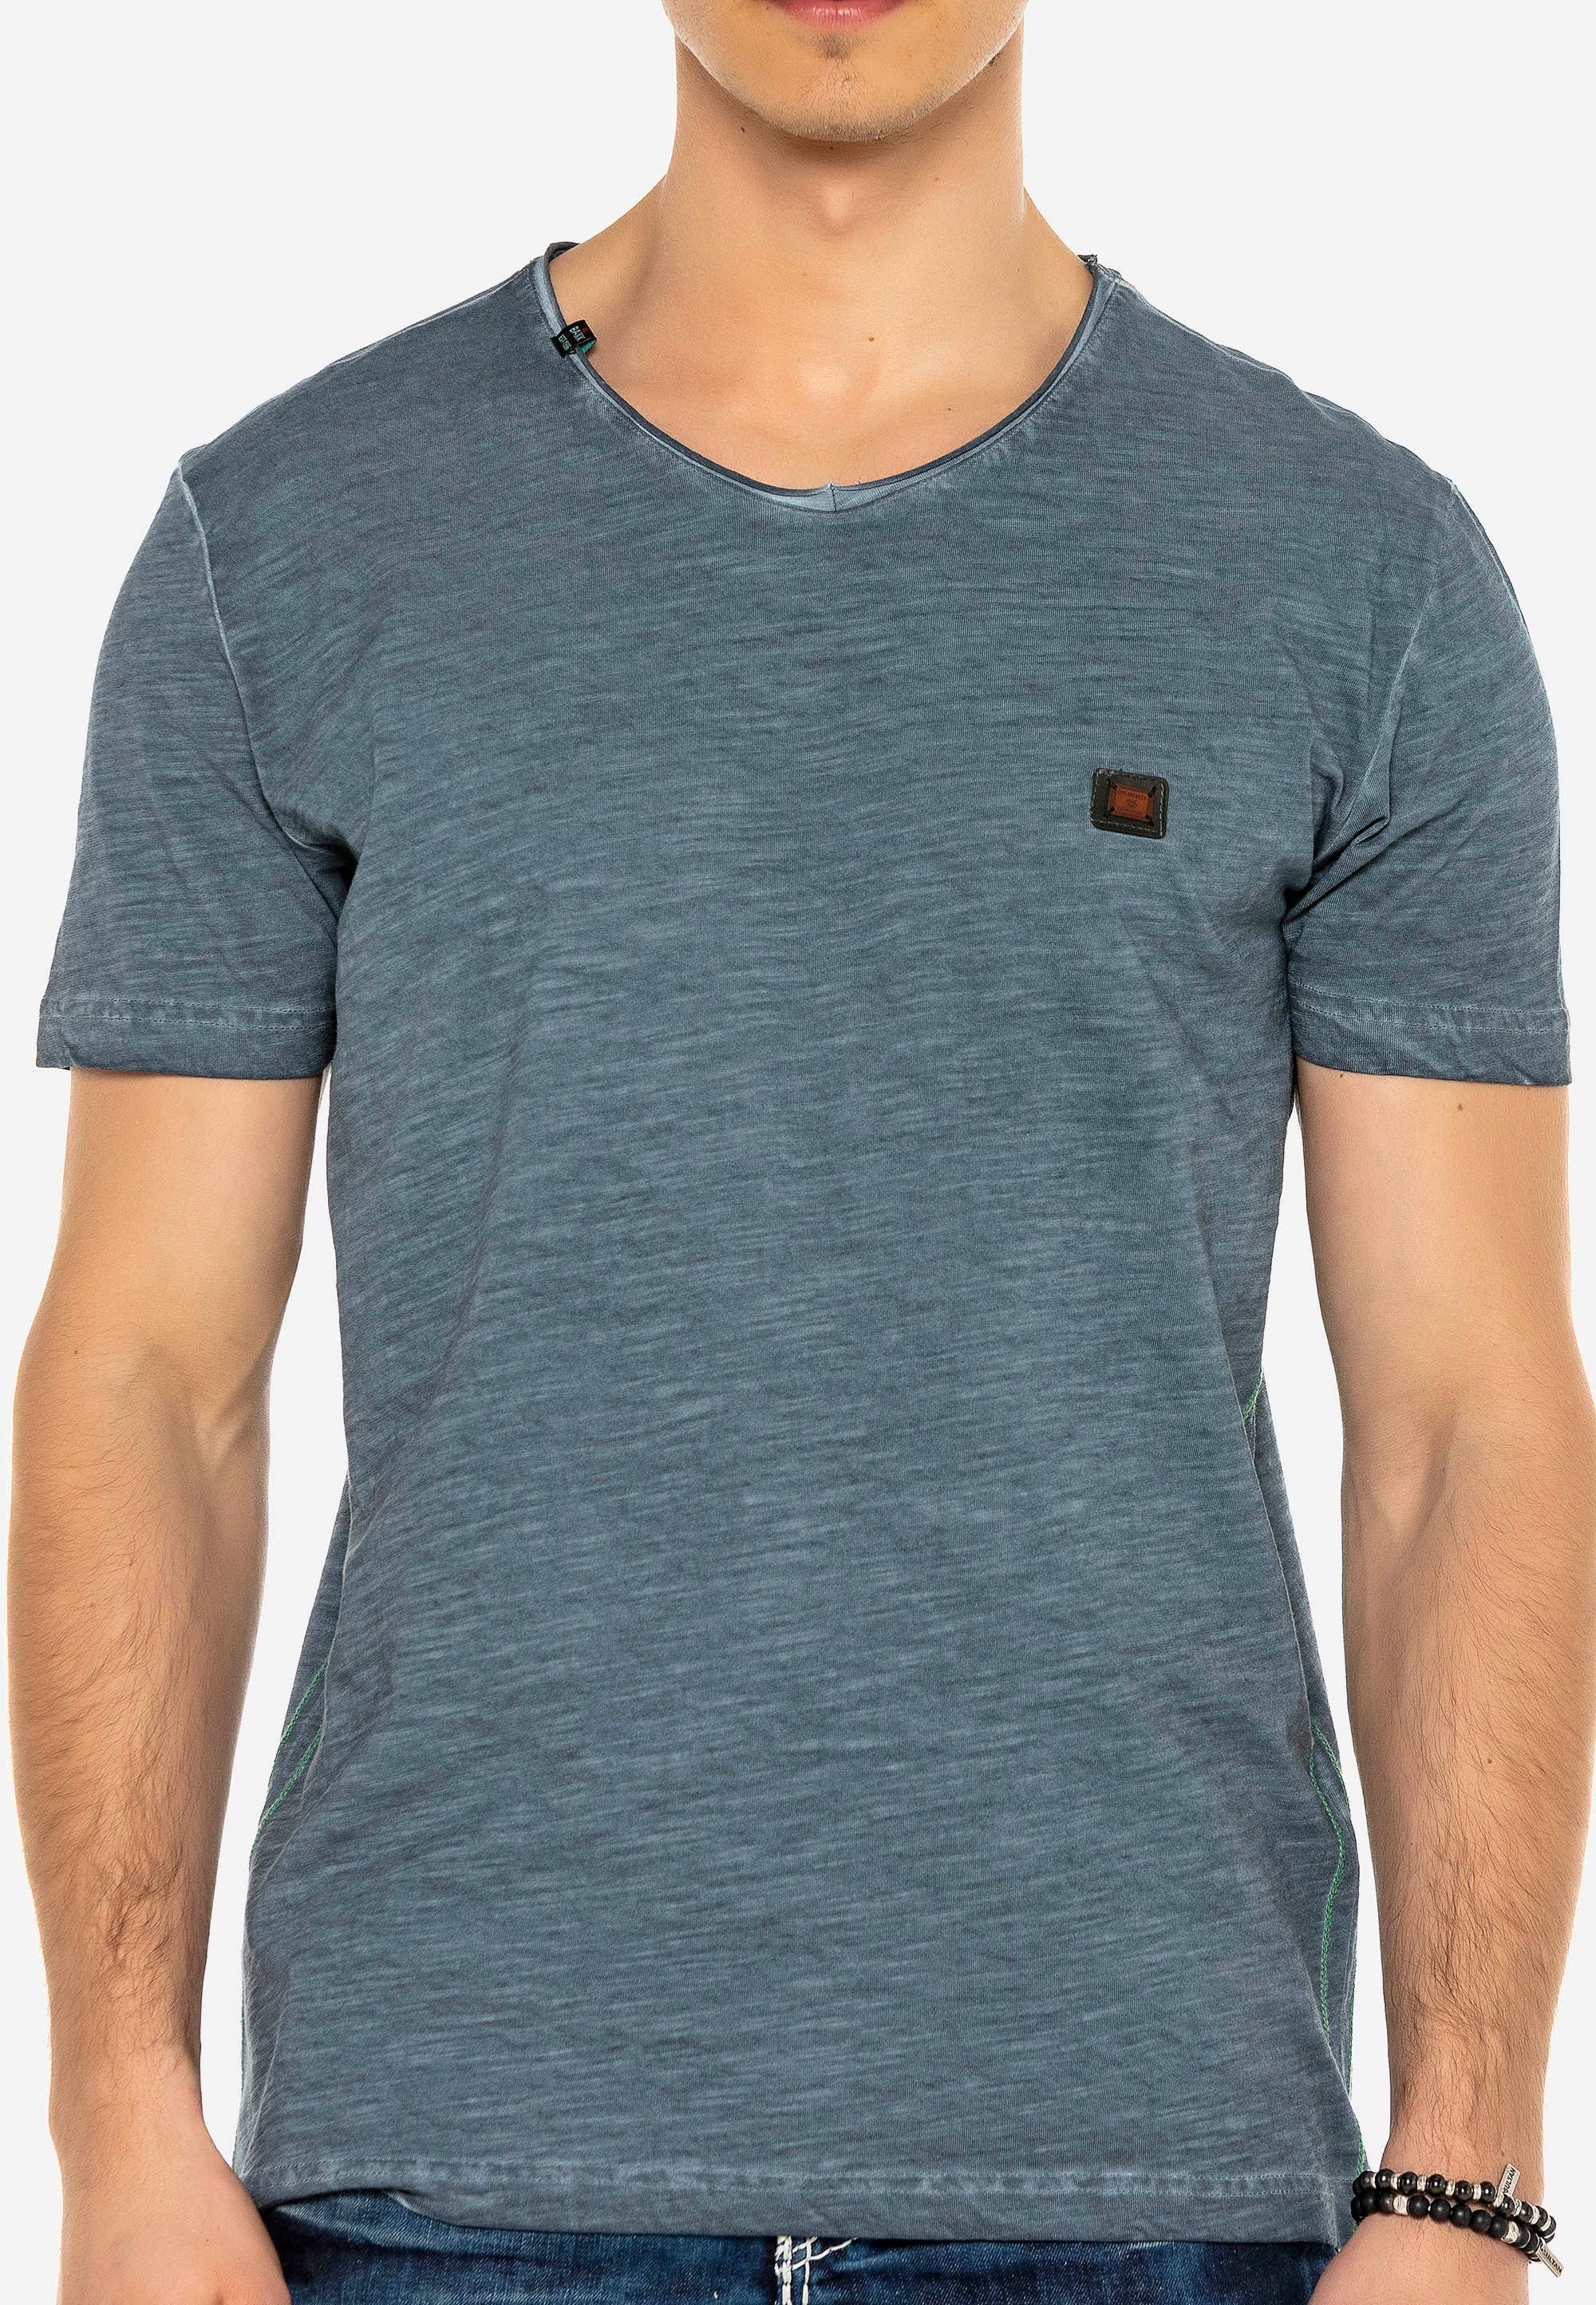 Logo-Patch kleinem Baxx mit & indigo Cipo T-Shirt